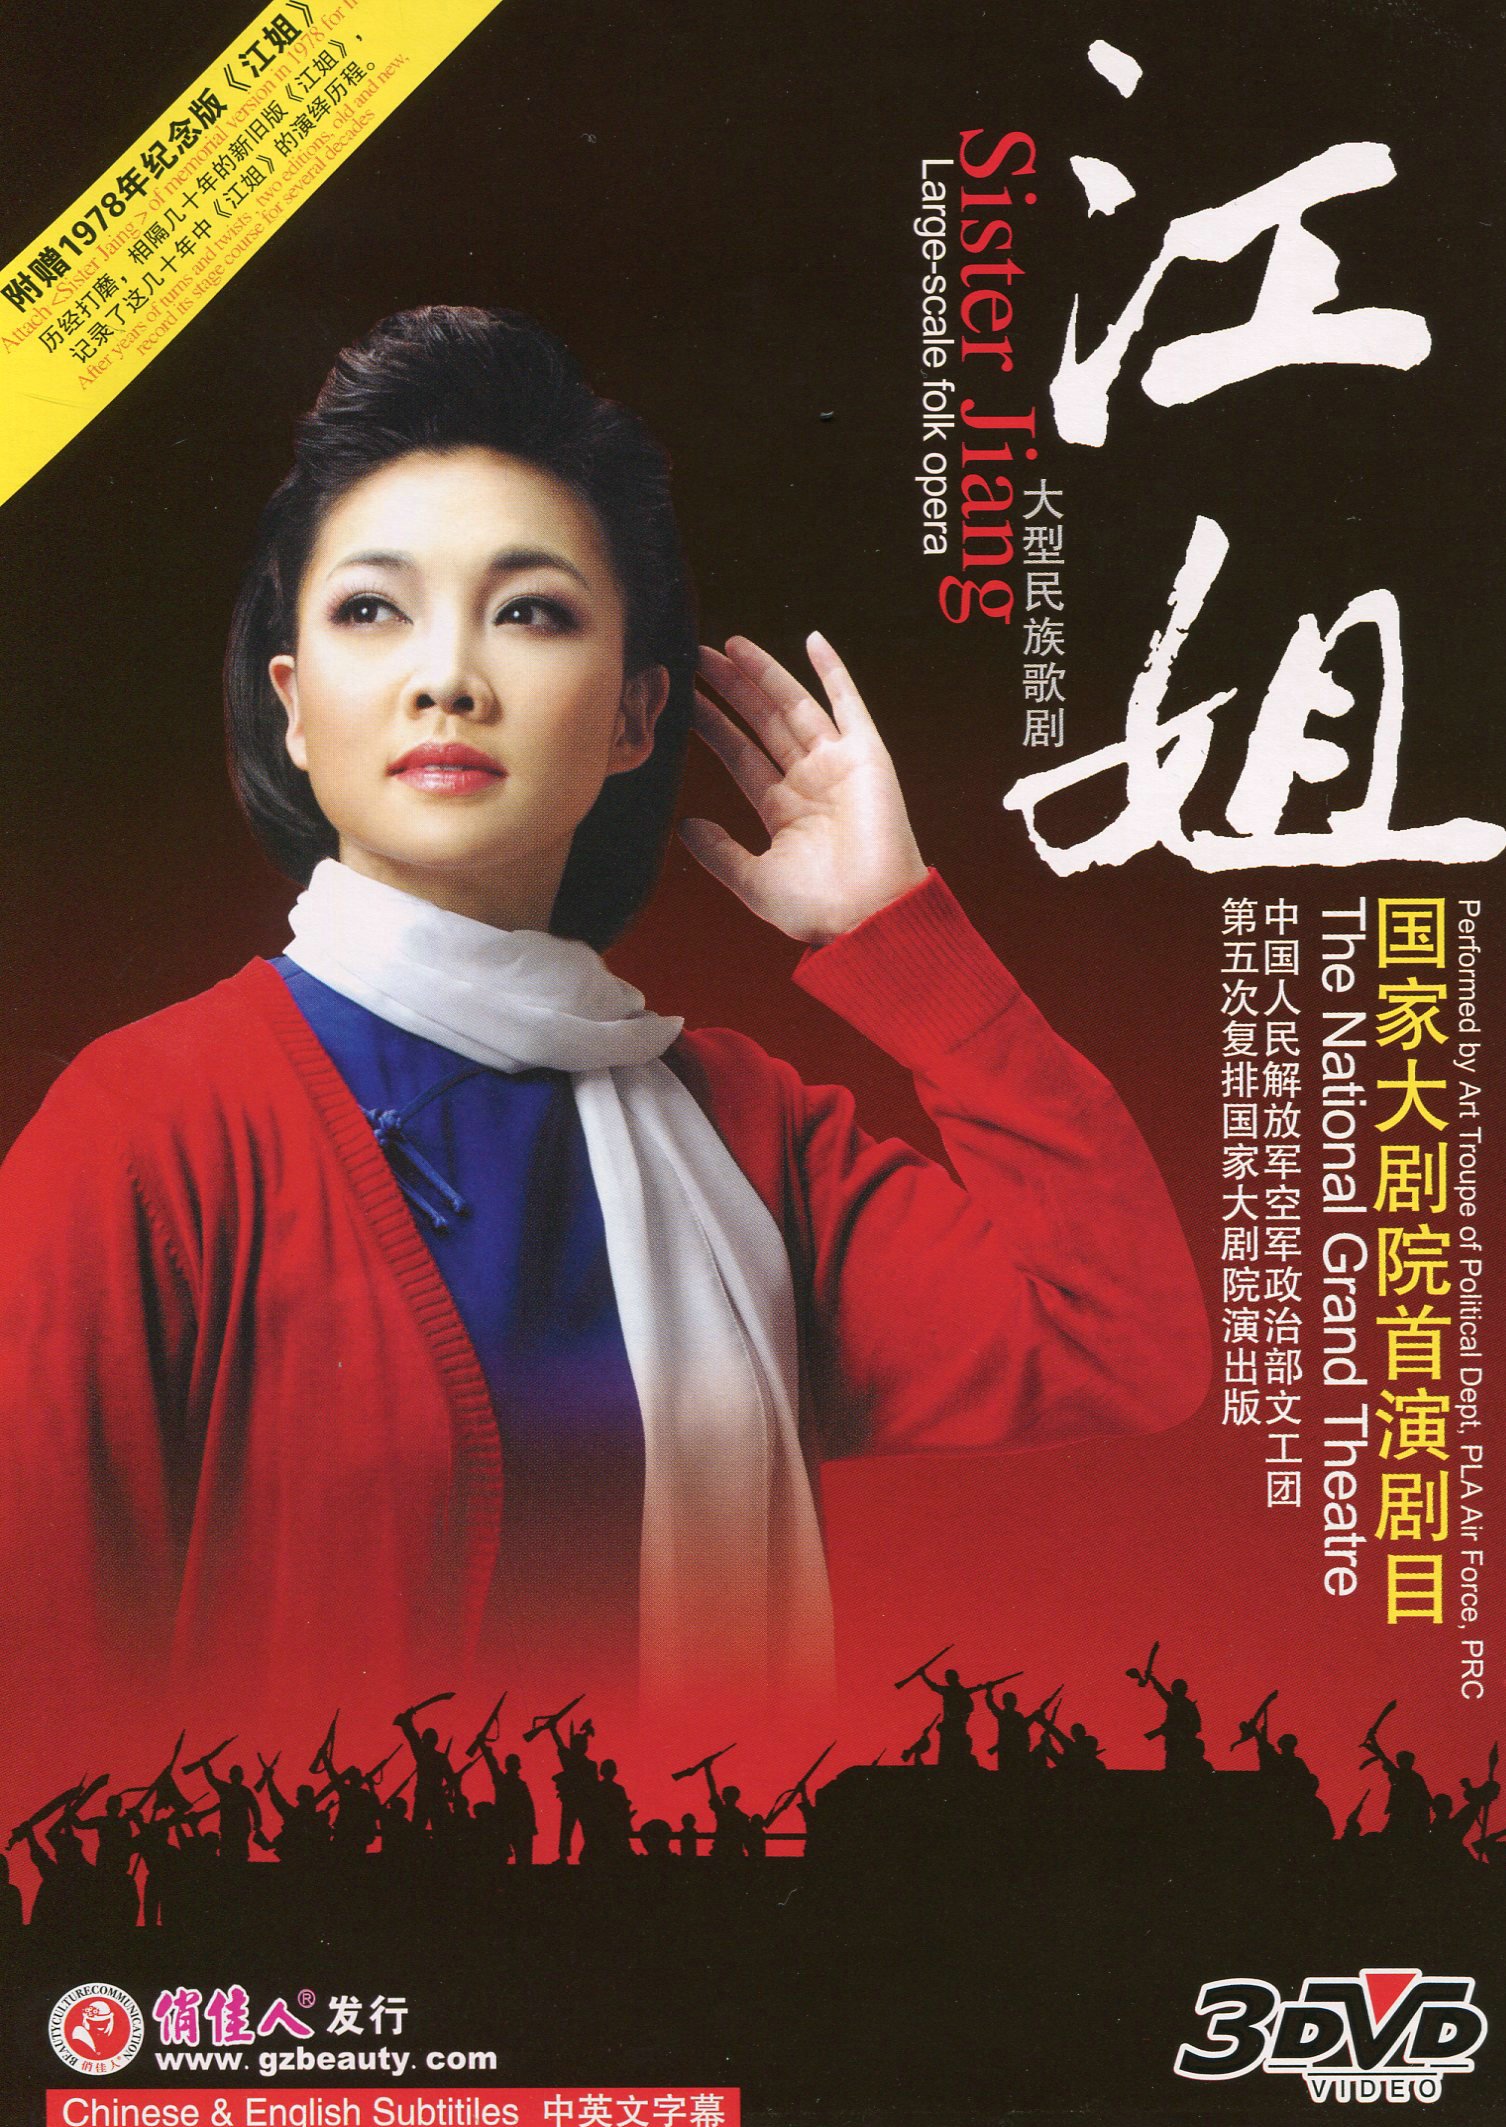 上海歌剧院赴京，《江姐》《晨钟》即将亮相国大歌剧节|江姐_新浪财经_新浪网